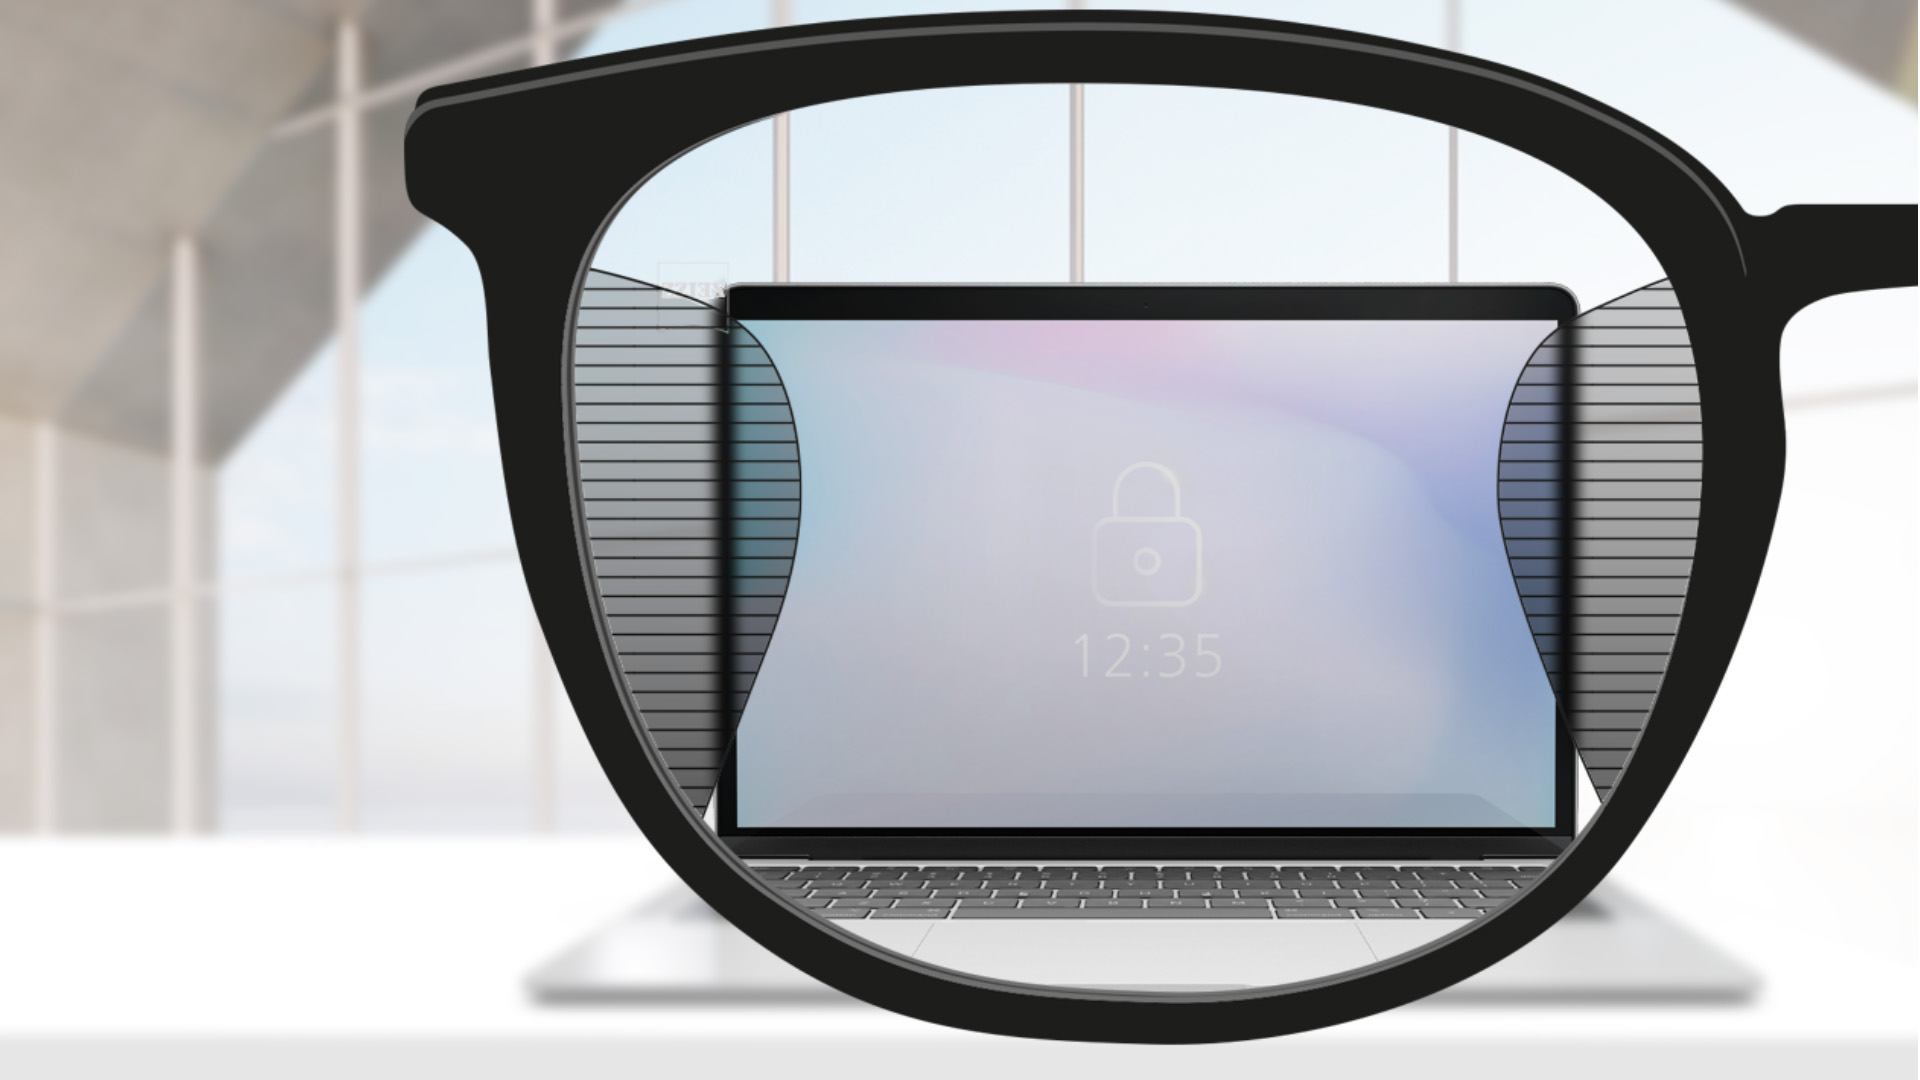 Abbildung mit Blick durch ein ZEISS Arbeitsplatz-Brillenglas. Durch das Brillenglas sieht man in der Mitte einen Computer-Bildschirm und links und rechts sind geringe unscharfe Flächen zu sehen.